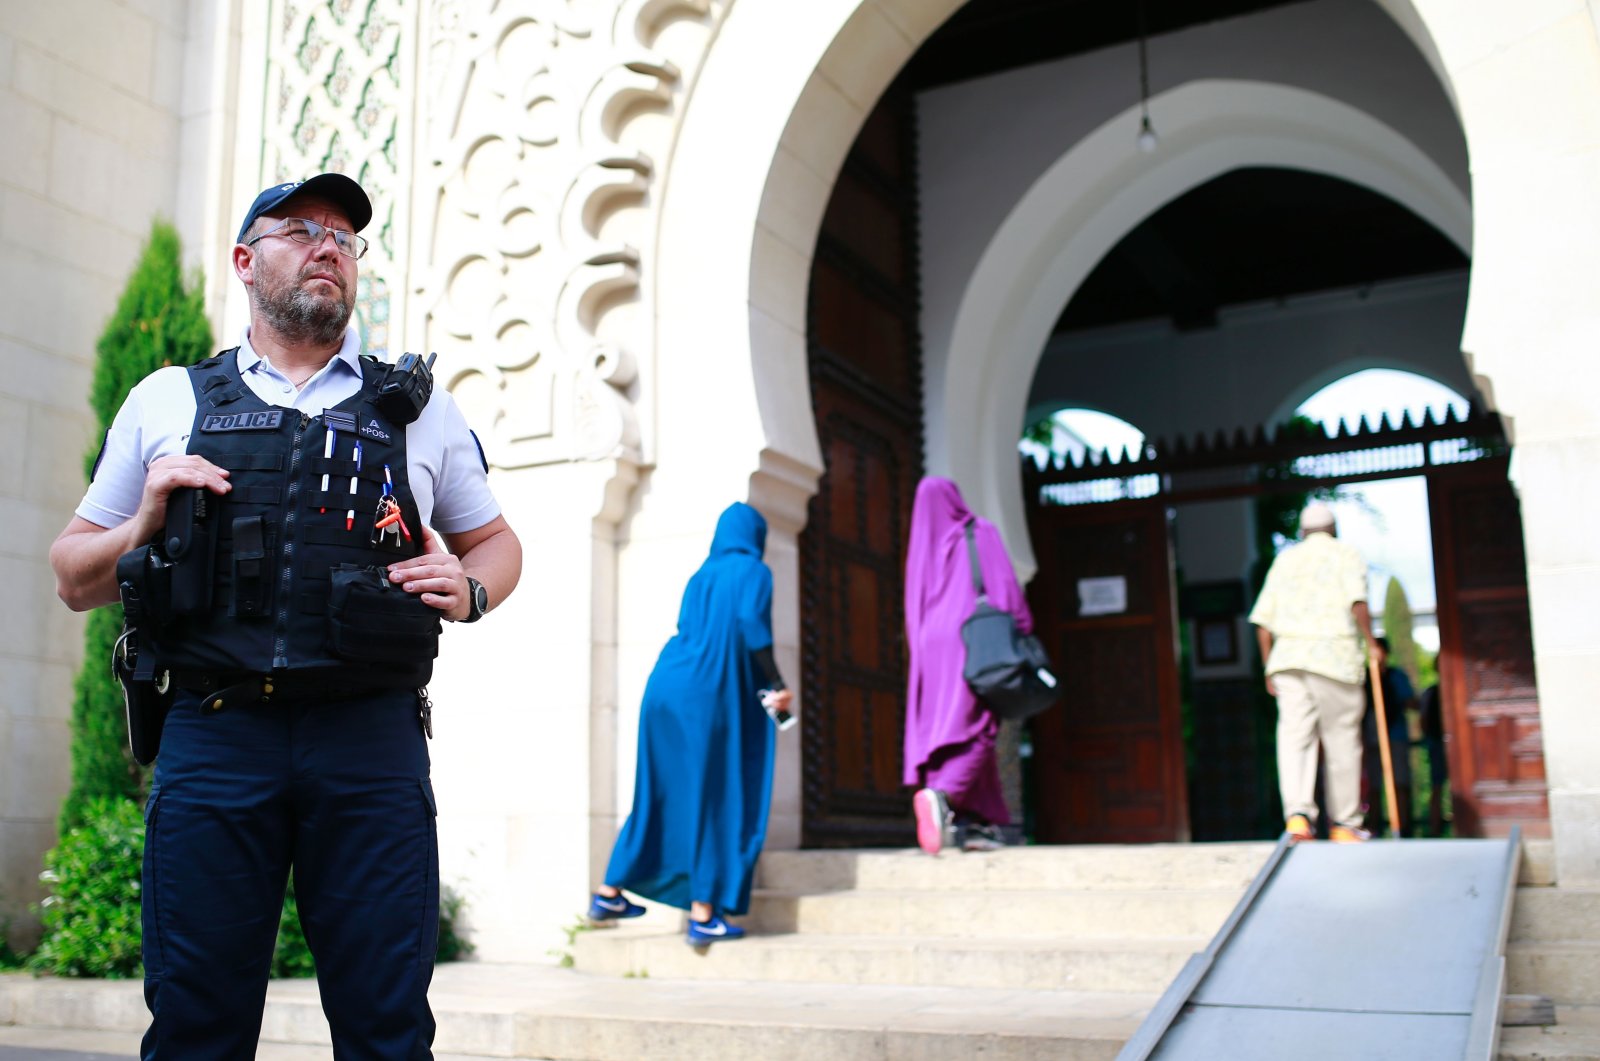 Penyerang Islamofobia menargetkan 3 masjid di Prancis